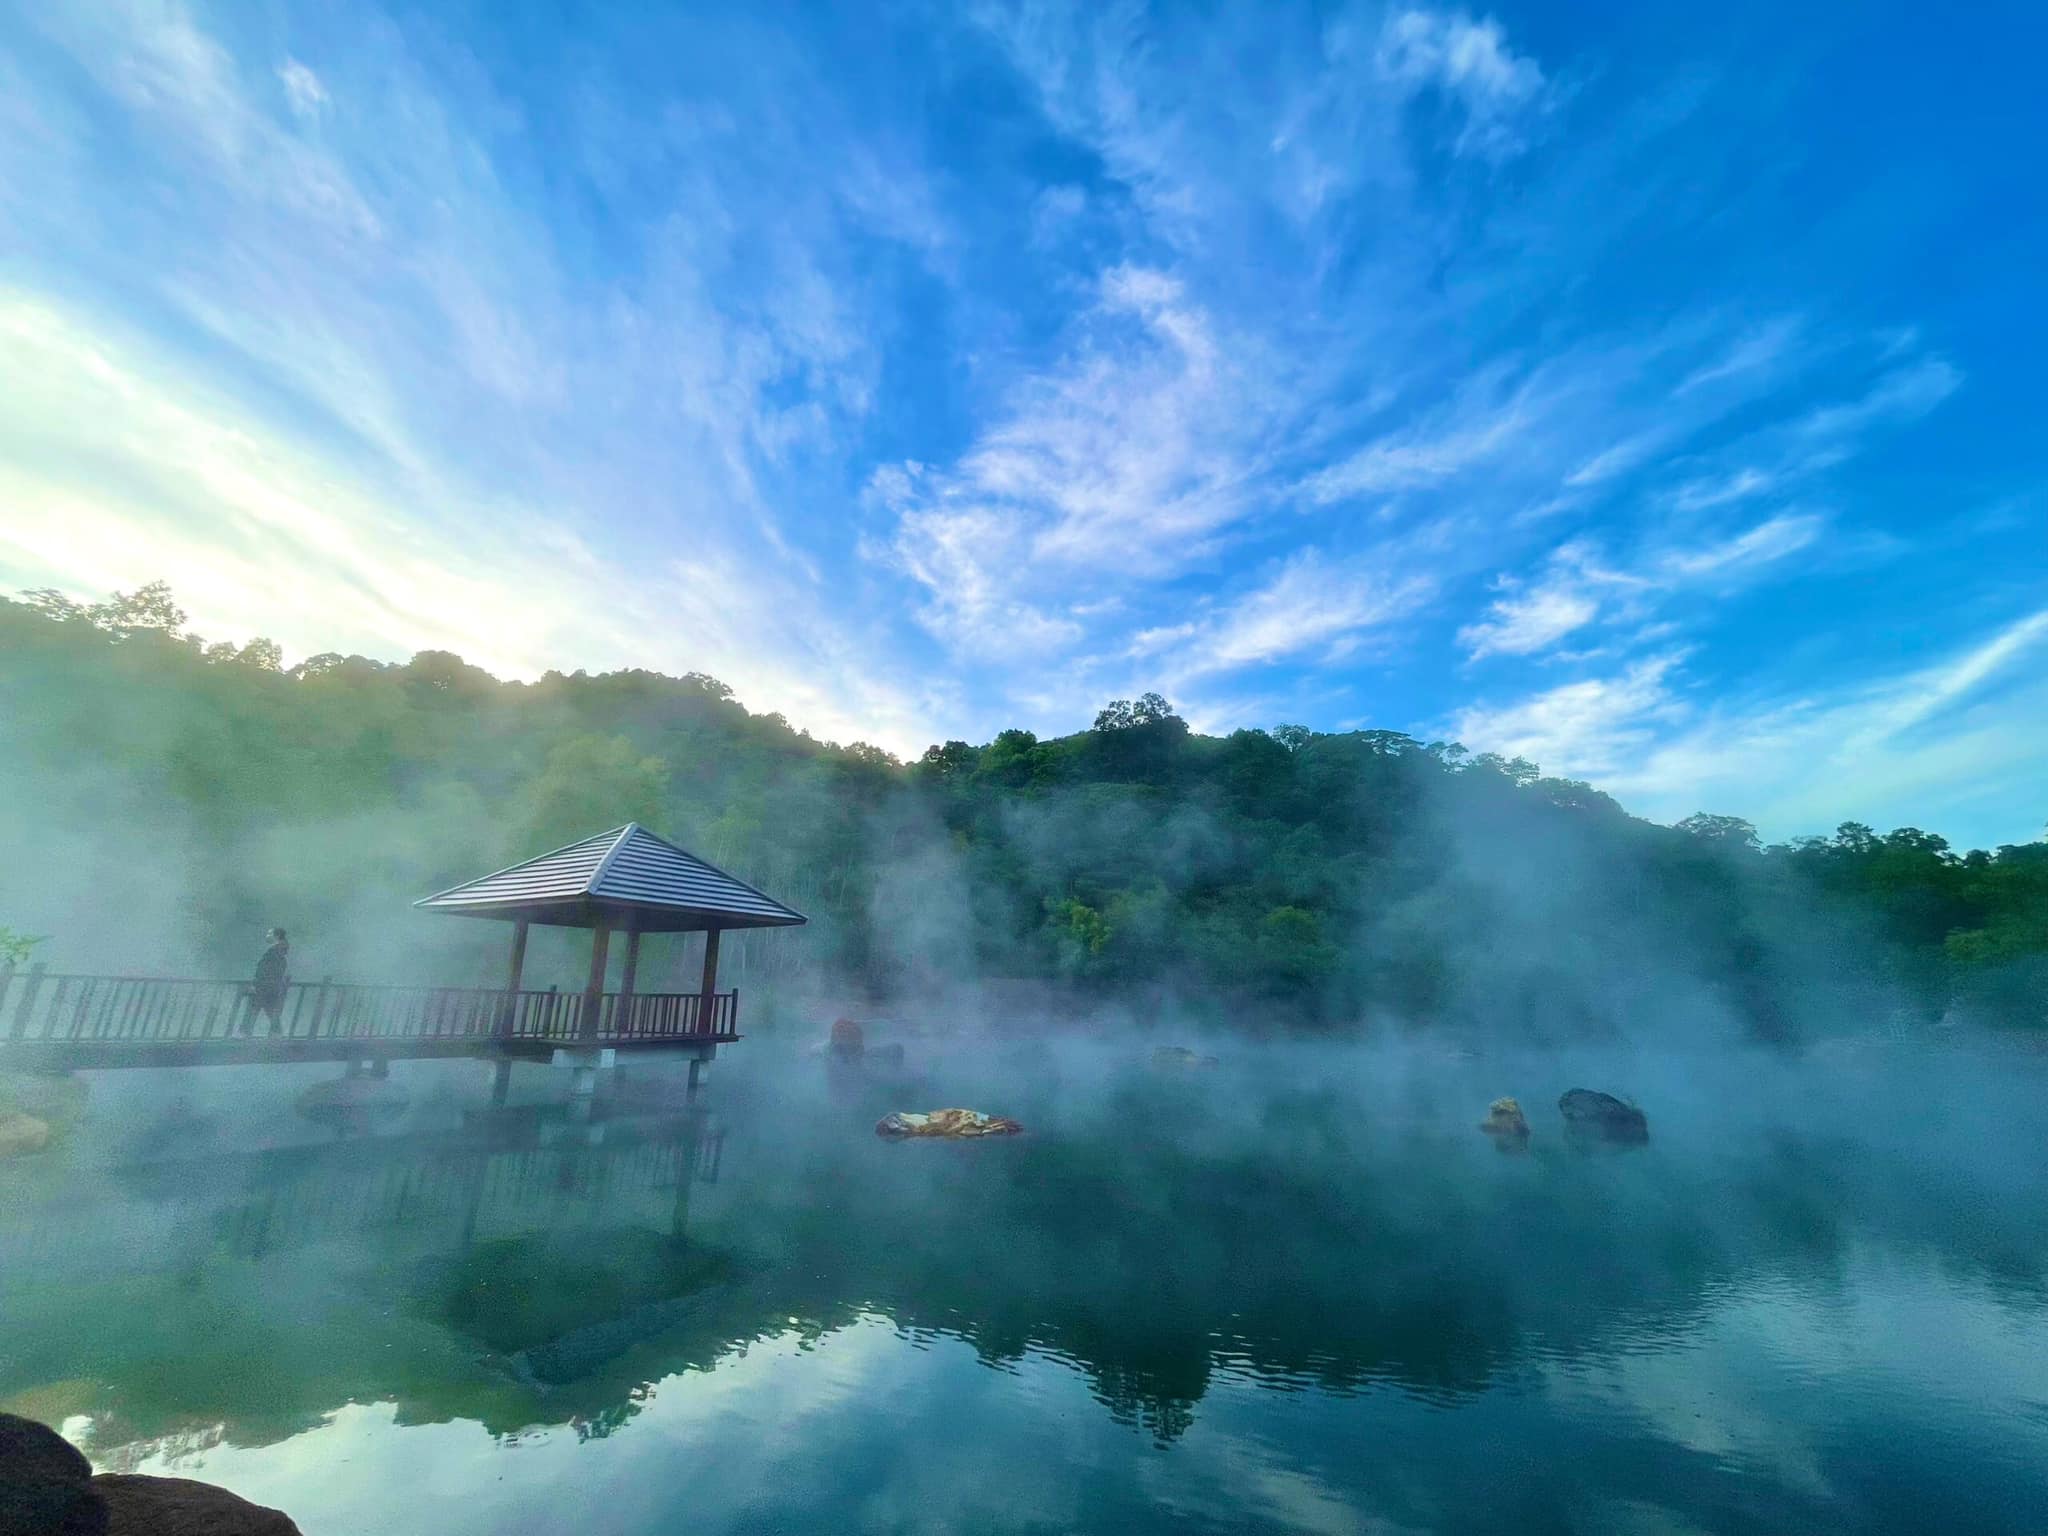 Trải nghiệm Bang Onsen Resort tại Quảng Bình mùa đông xuân là lựa chọn hợp lý